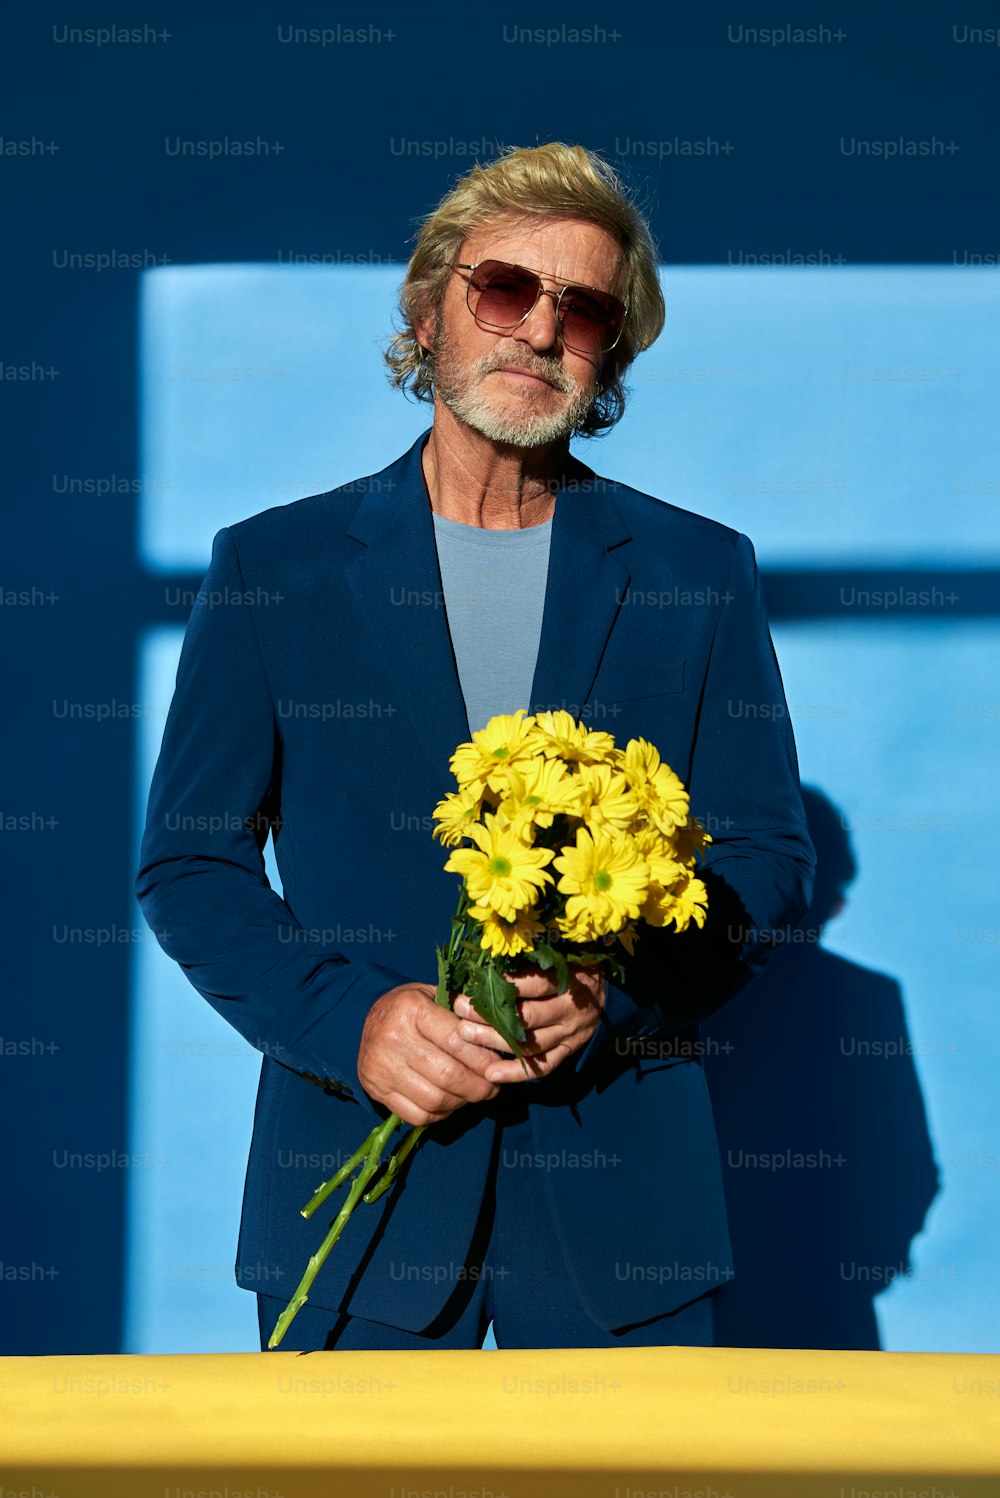 Un hombre de traje sosteniendo un ramo de flores